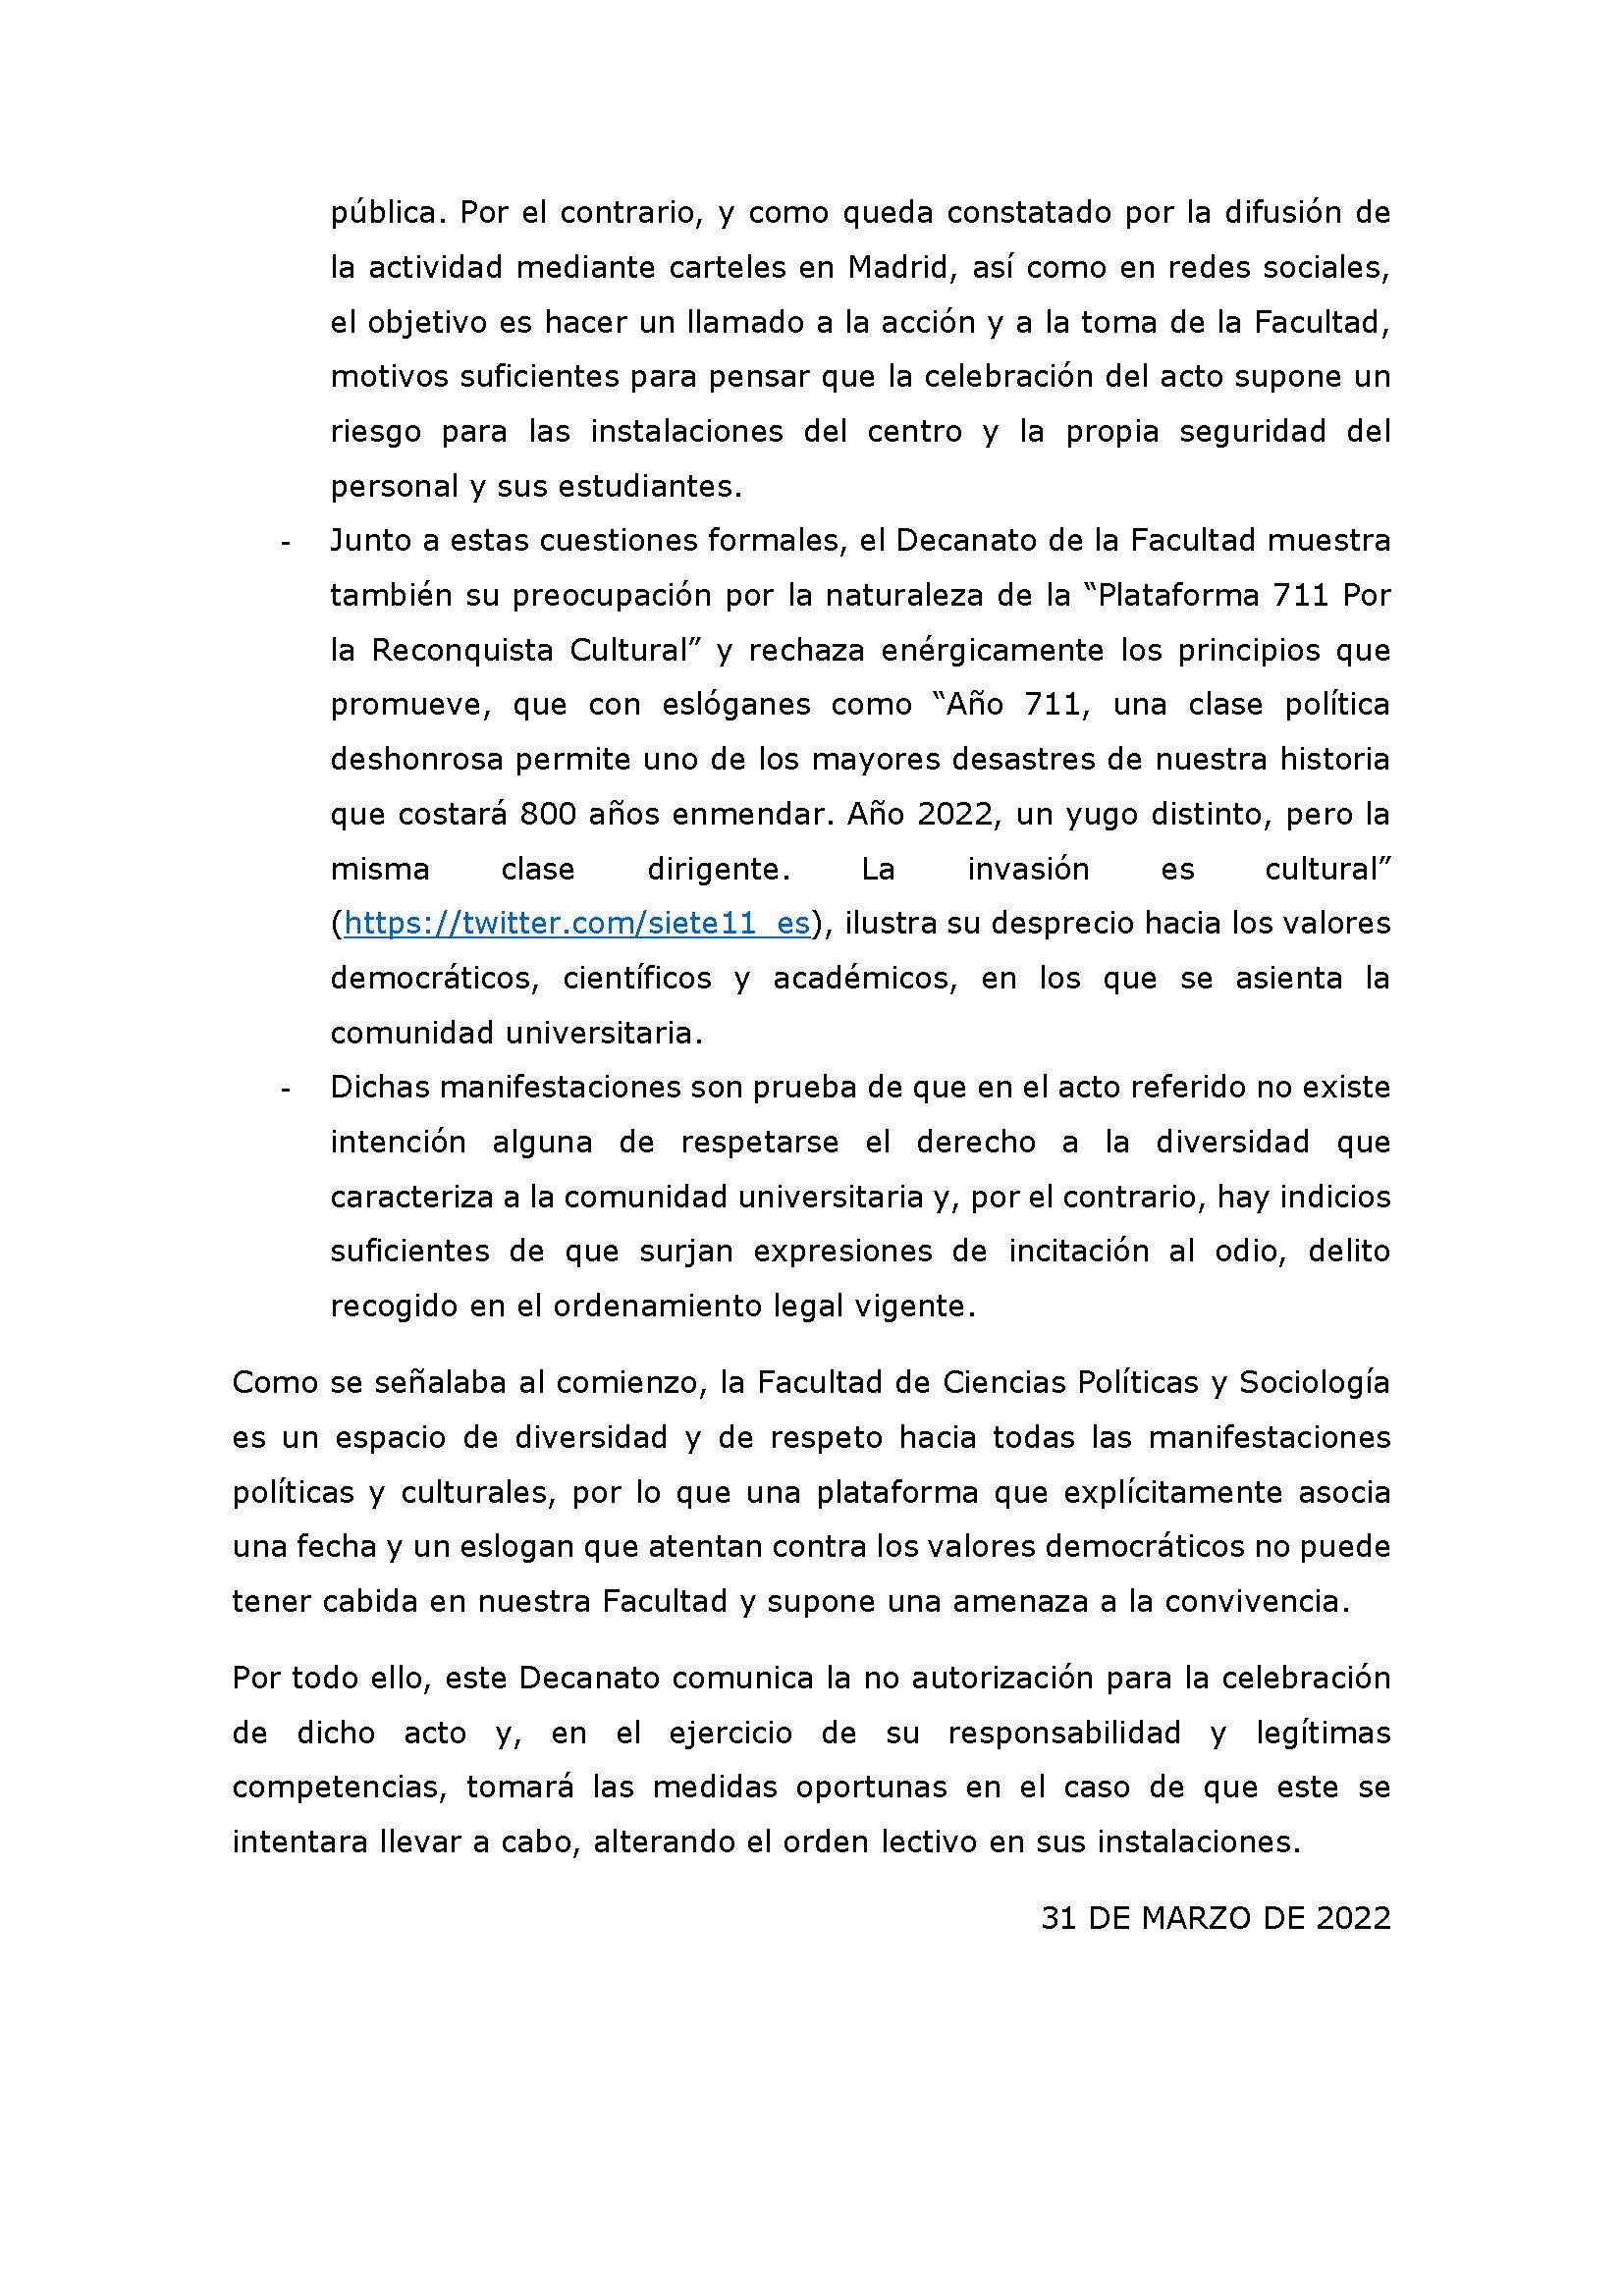 COMUNICADO DE LA FACULTAD DE CIENCIAS POLÍTICAS Y SOCIOLOGÍA DE LA UNIVERSIDAD COMPLUTENSE DE MADRID - 2